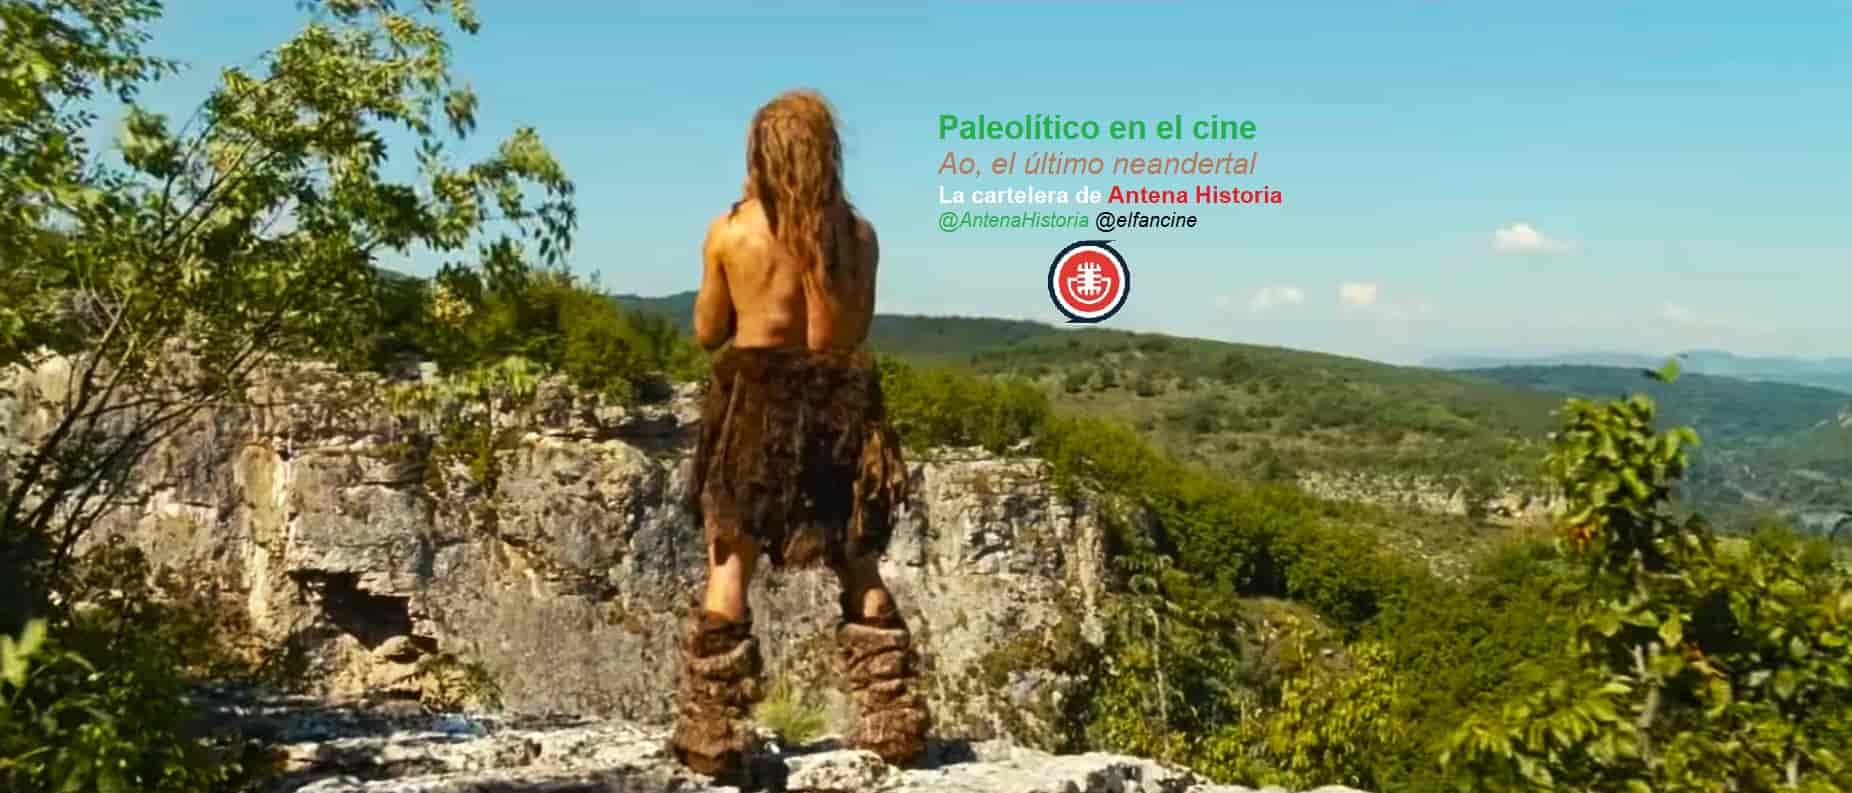 Paleolítico en el cine - AO el último neandertal - En busca del fuego - El clan del oso cavernario - Alpha - Cavernícola - Altamira - Atapuerca - el fancine - Antena Historia - Podcast de cine